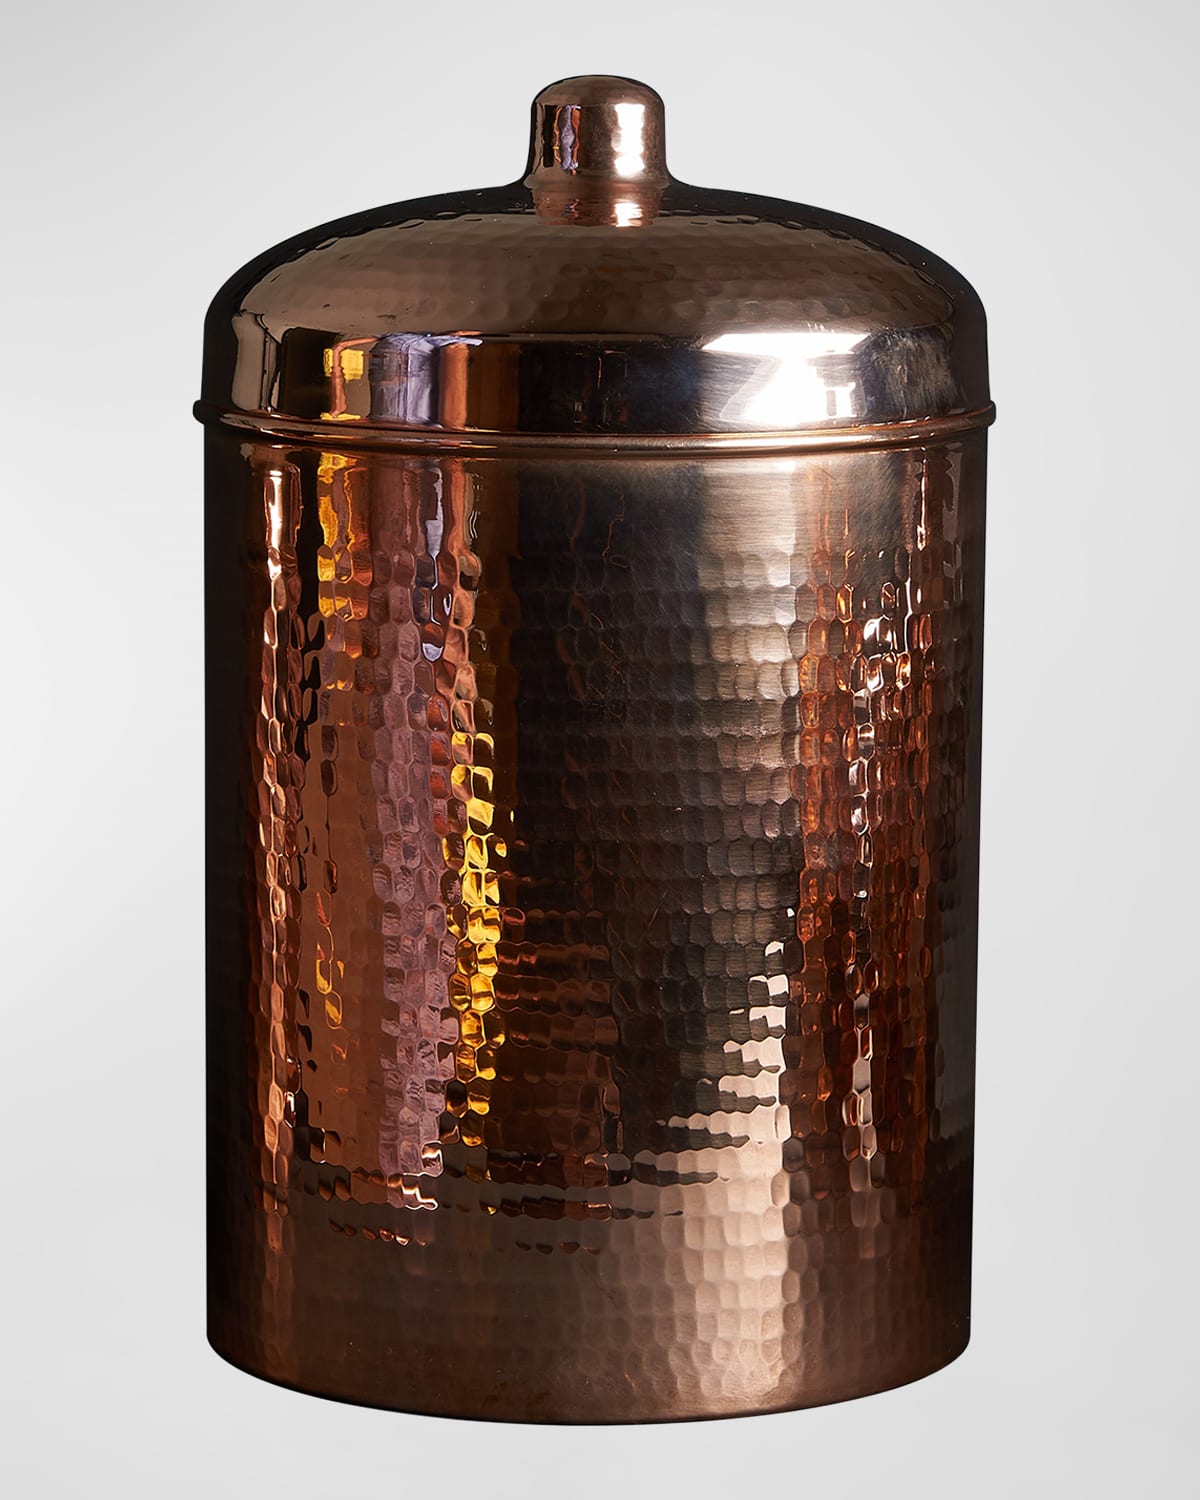 Sertodo Copper Copper Kitchen Canister - 5.25qts.